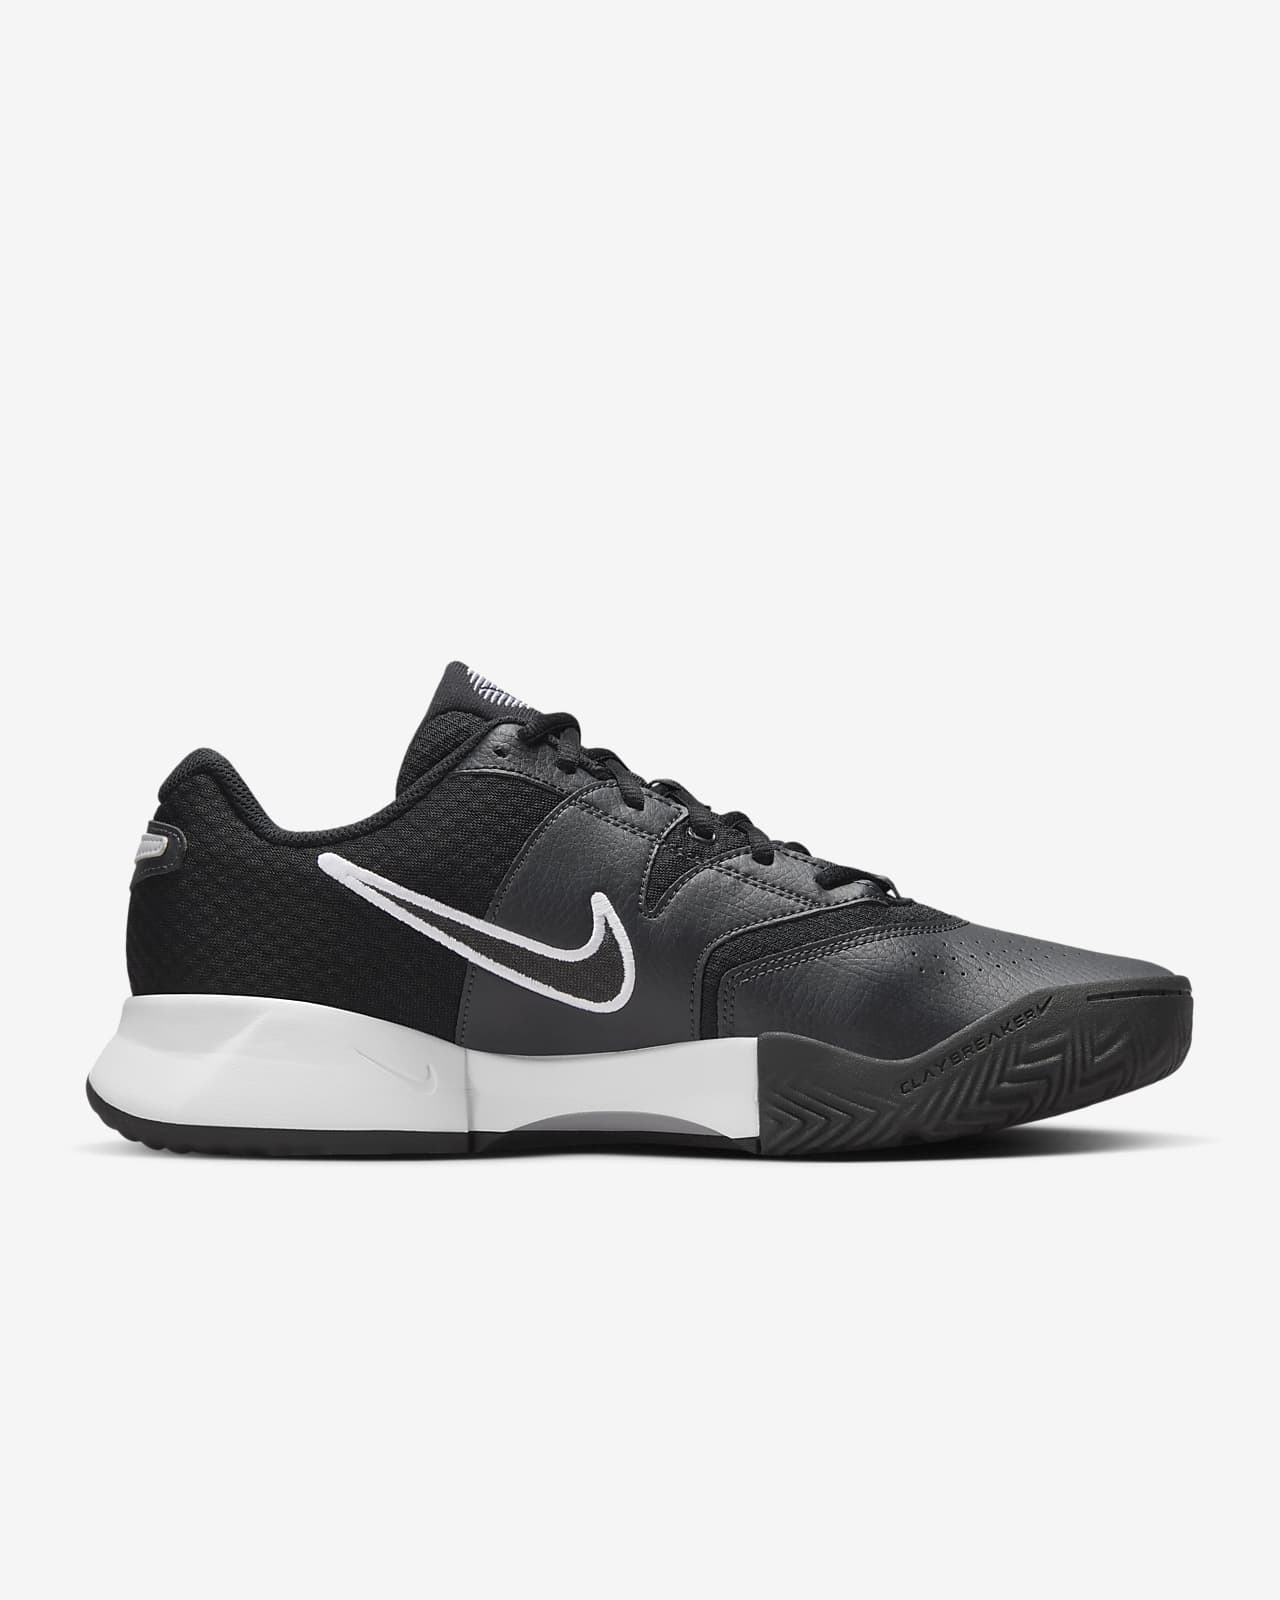 NikeCourt Lite 4 Men's Clay Court Tennis Shoes. Nike LU